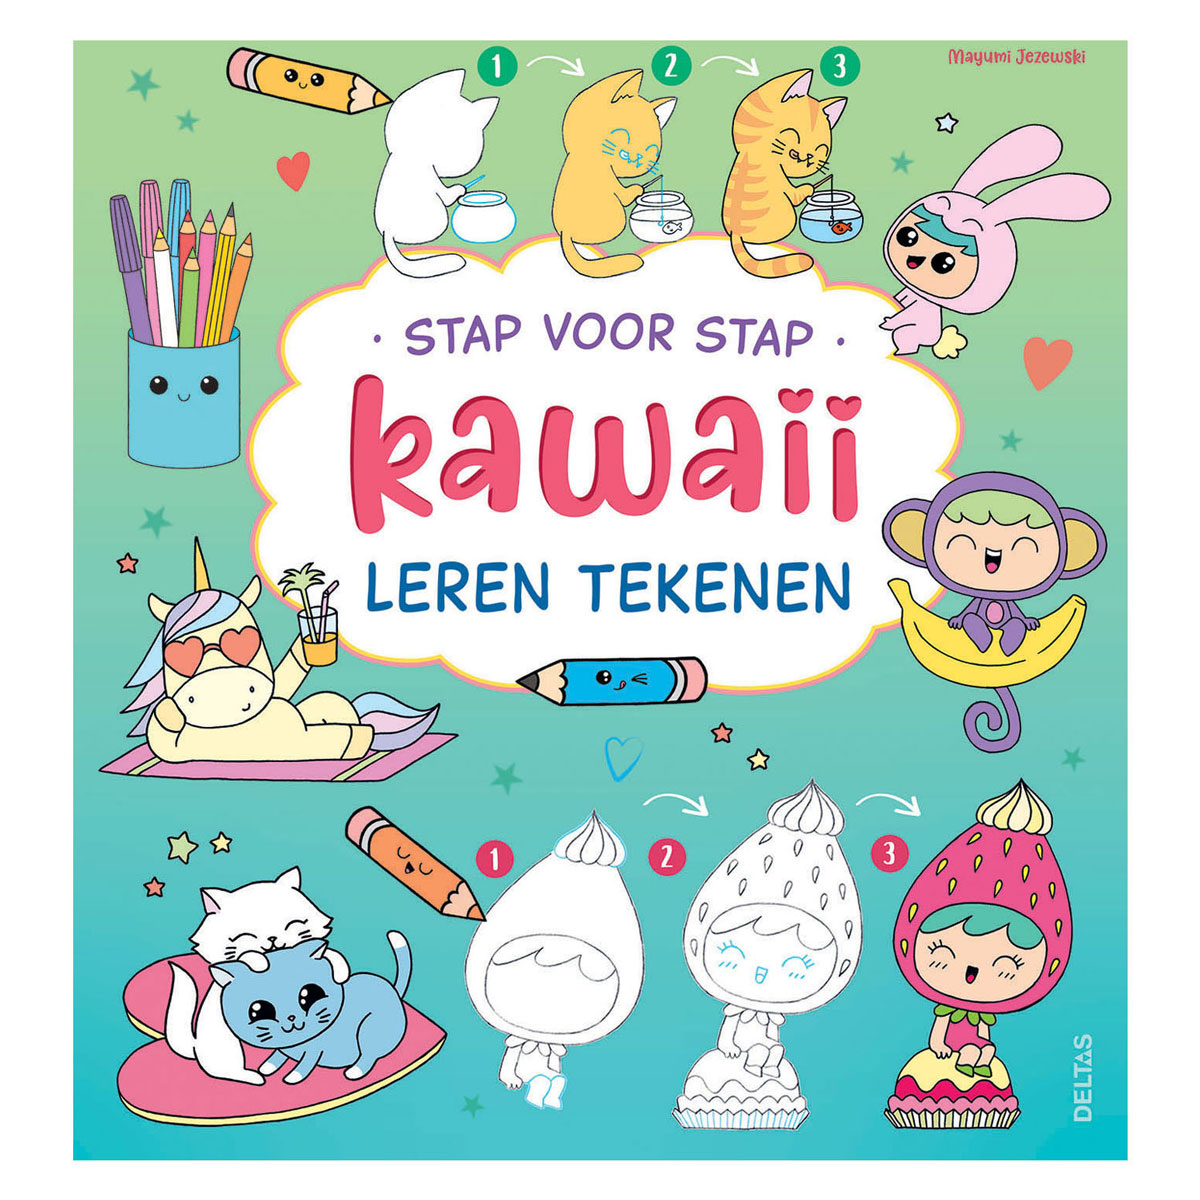 Schritt-für-Schritt-Kawaii-Hobbybuch zum Zeichnen lernen